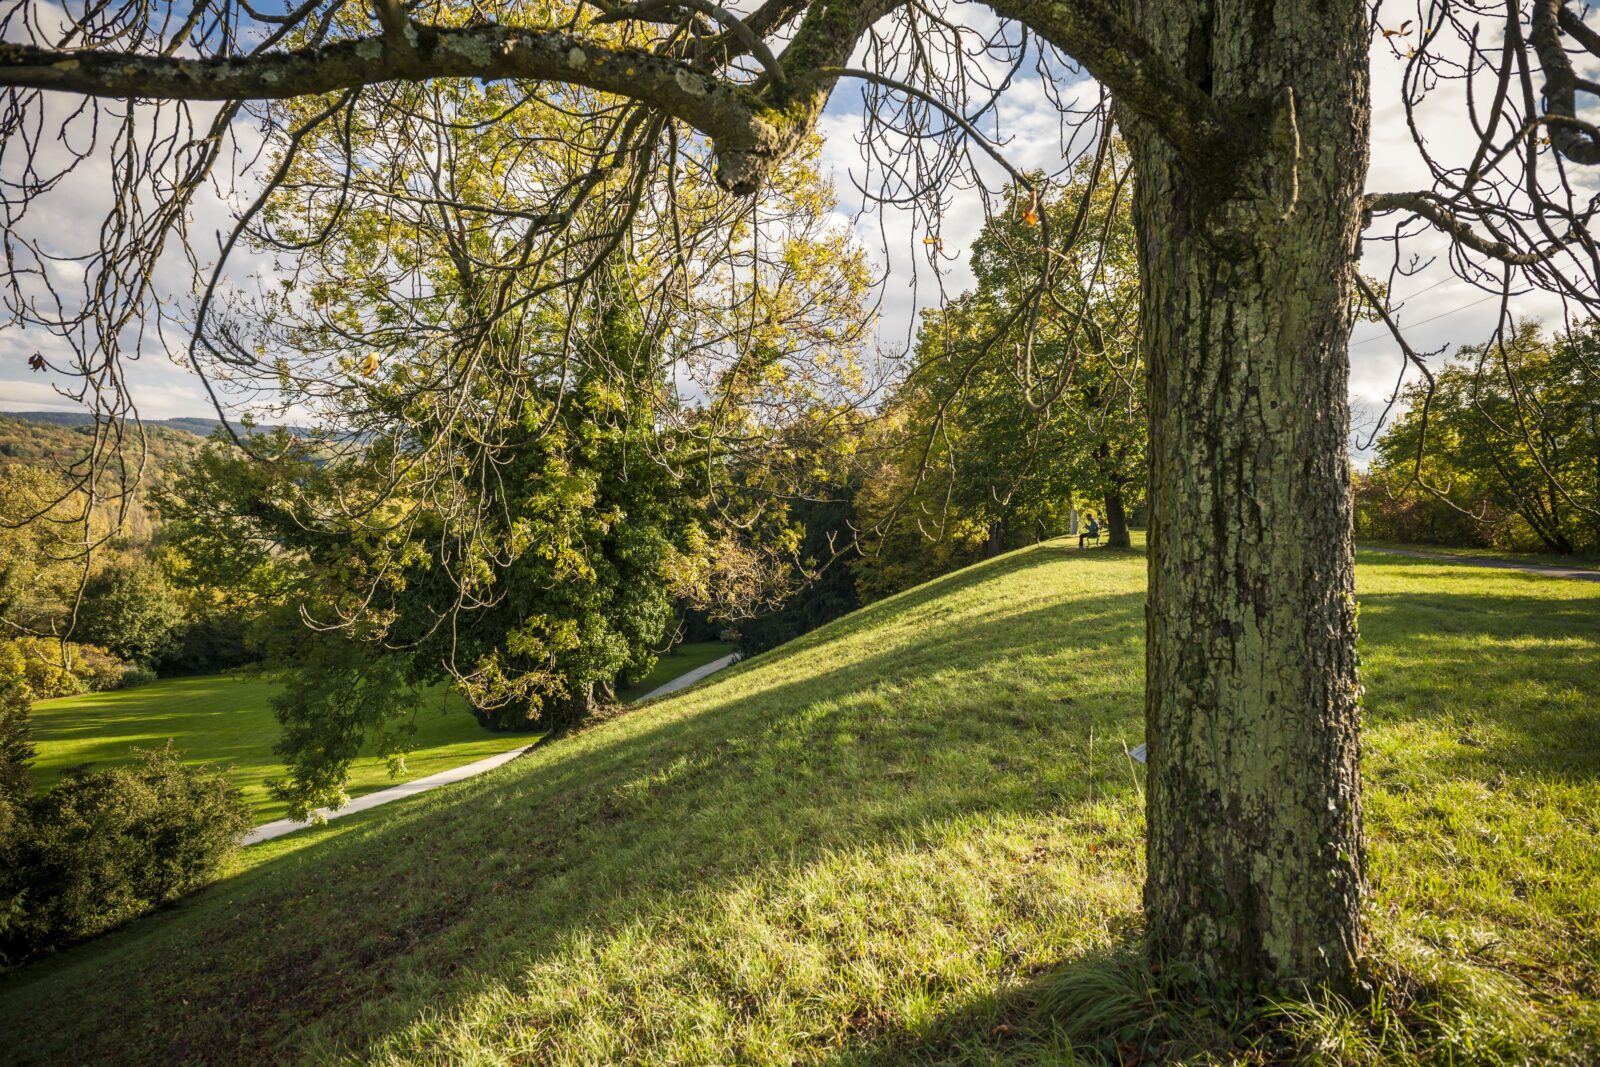 Naturschutzgebiet auf dem Hochplateau oberhalb vom Englischen Garten
© Christoph Merian Stiftung, Kathrin Schulthess